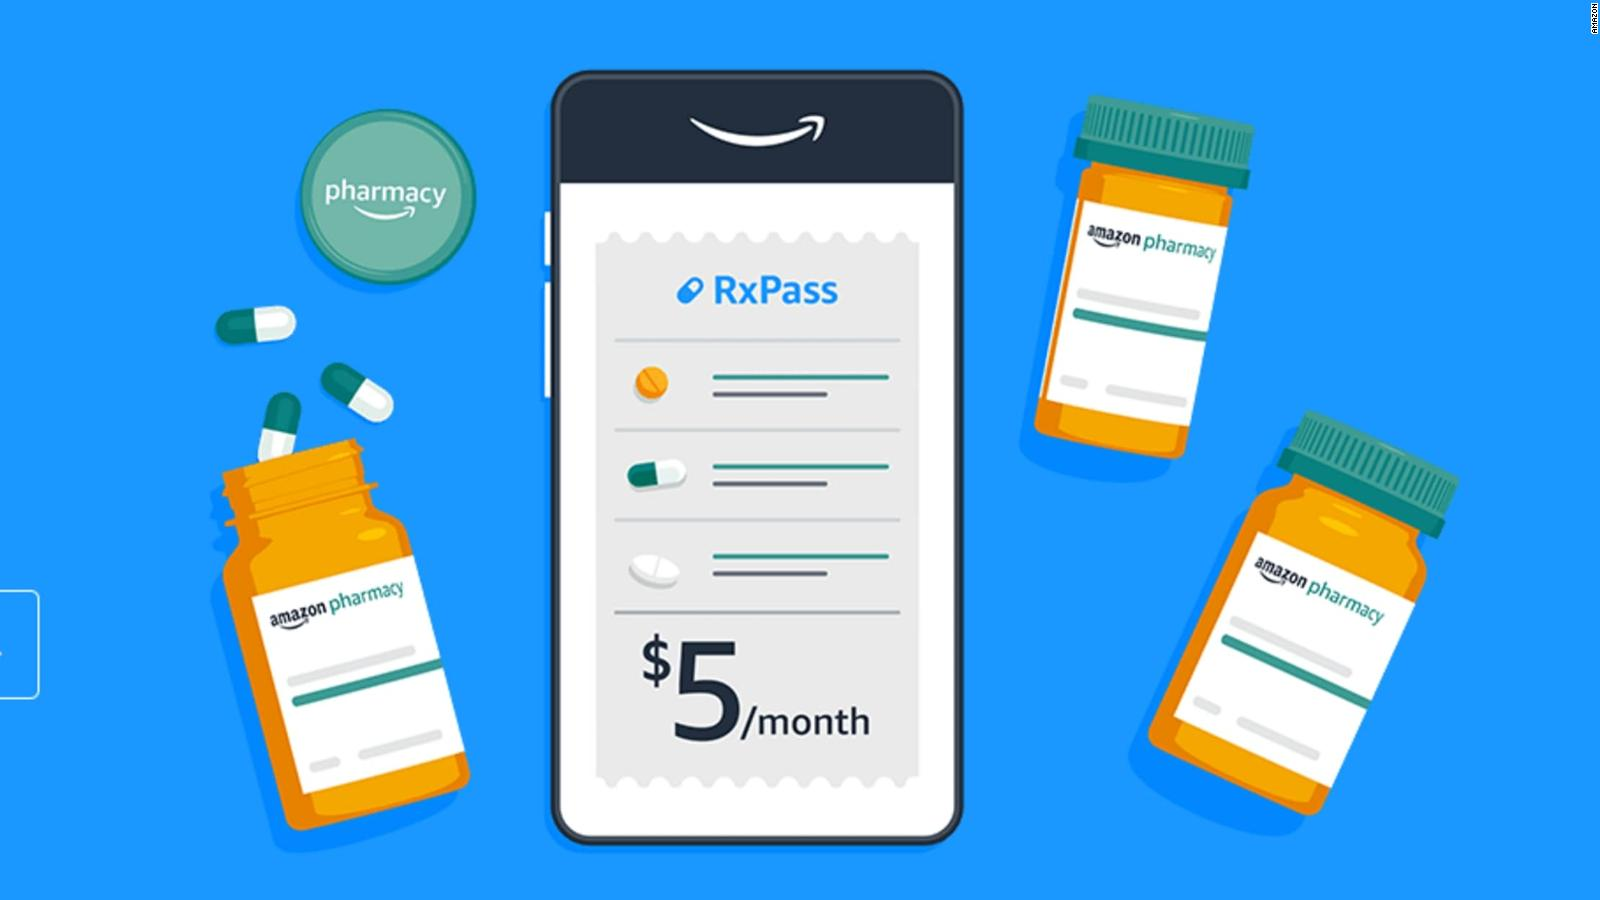 Amazon ofrece RxPass para usuarios Prime por un precio extra de $ 5.